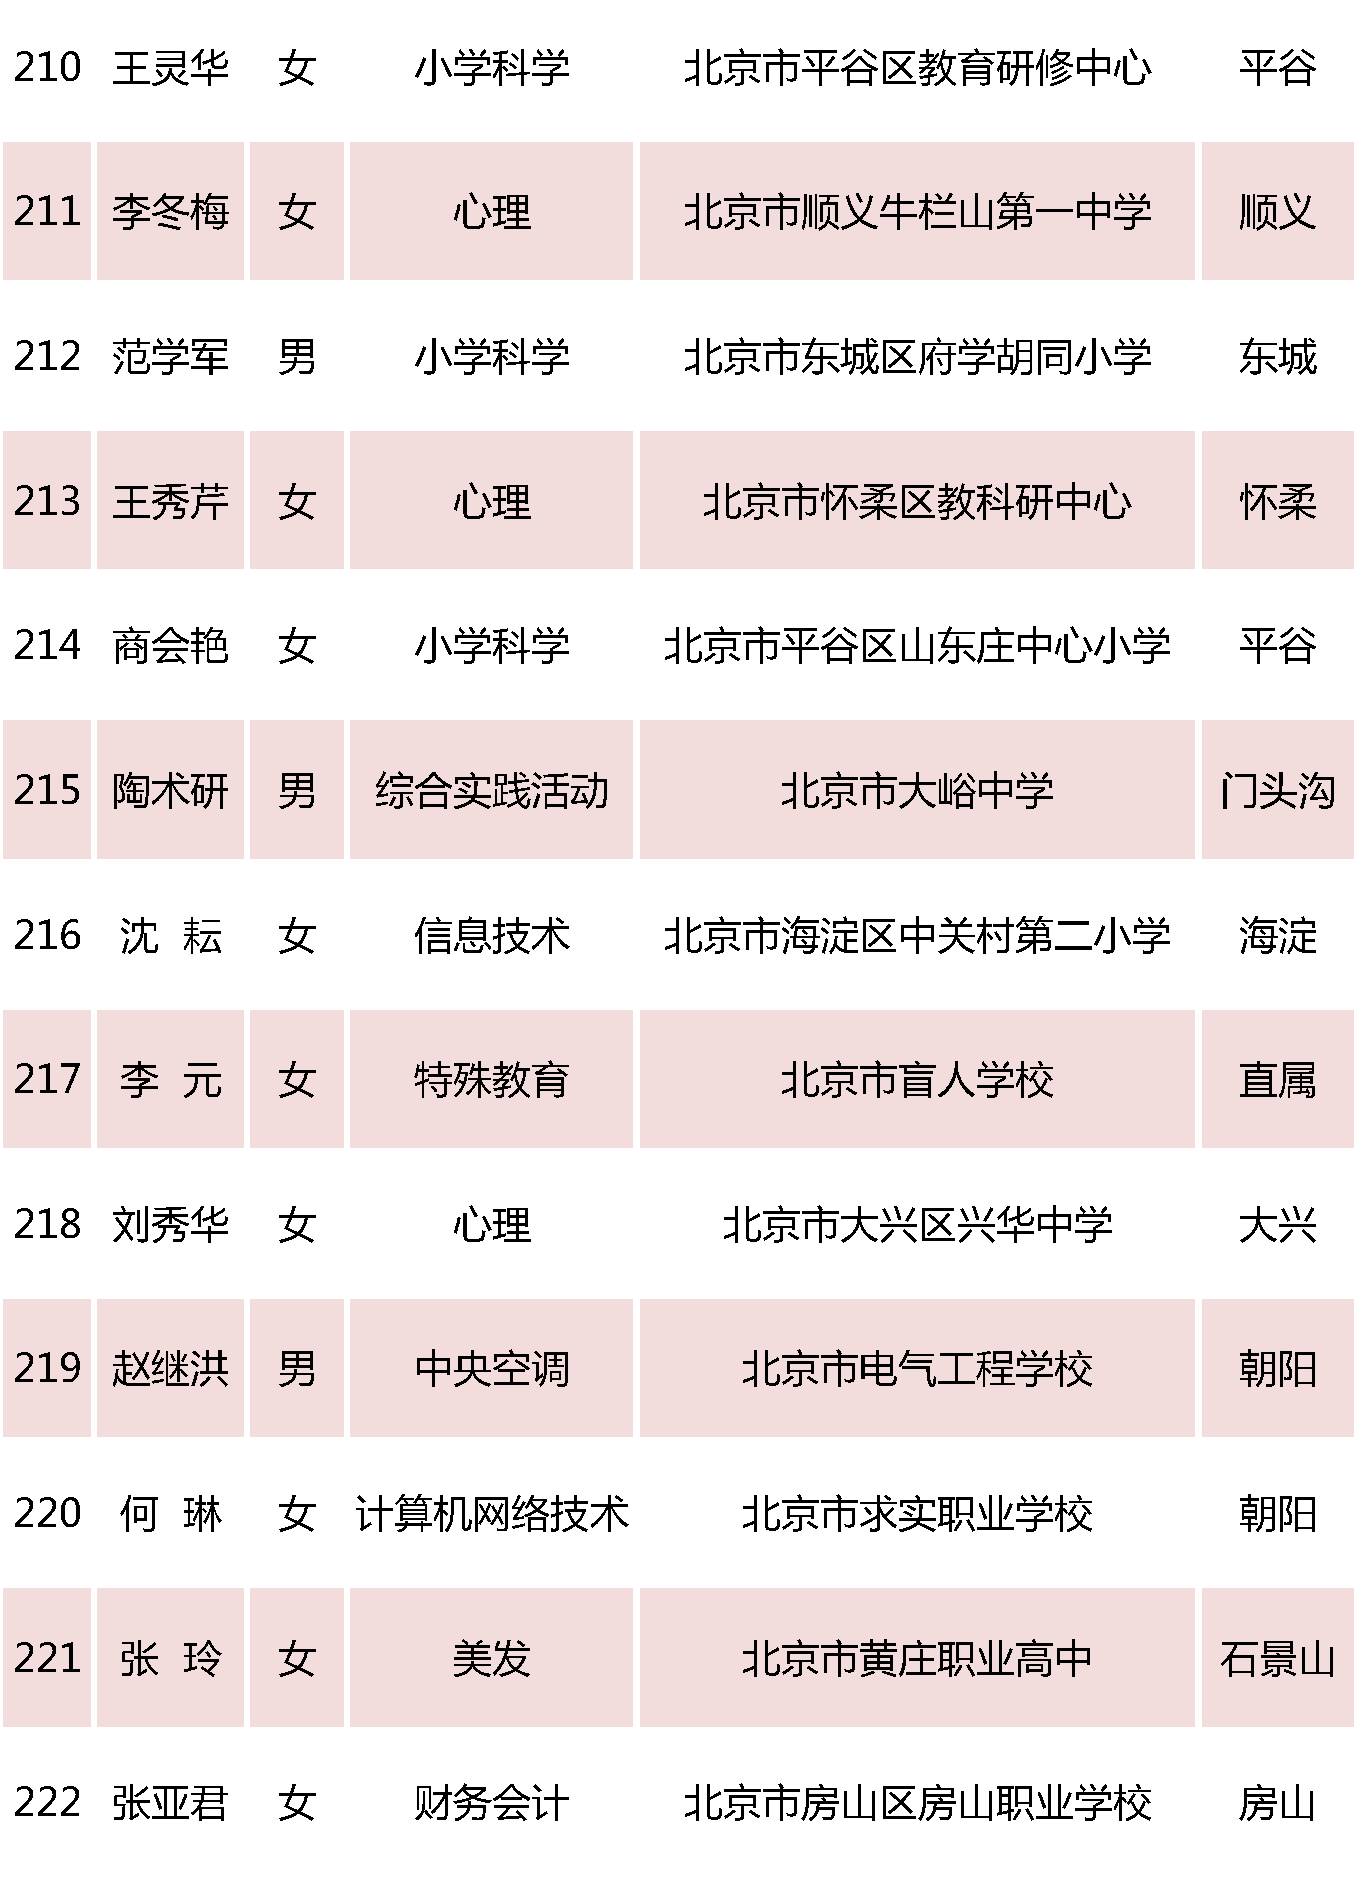 北京特级教师名单17